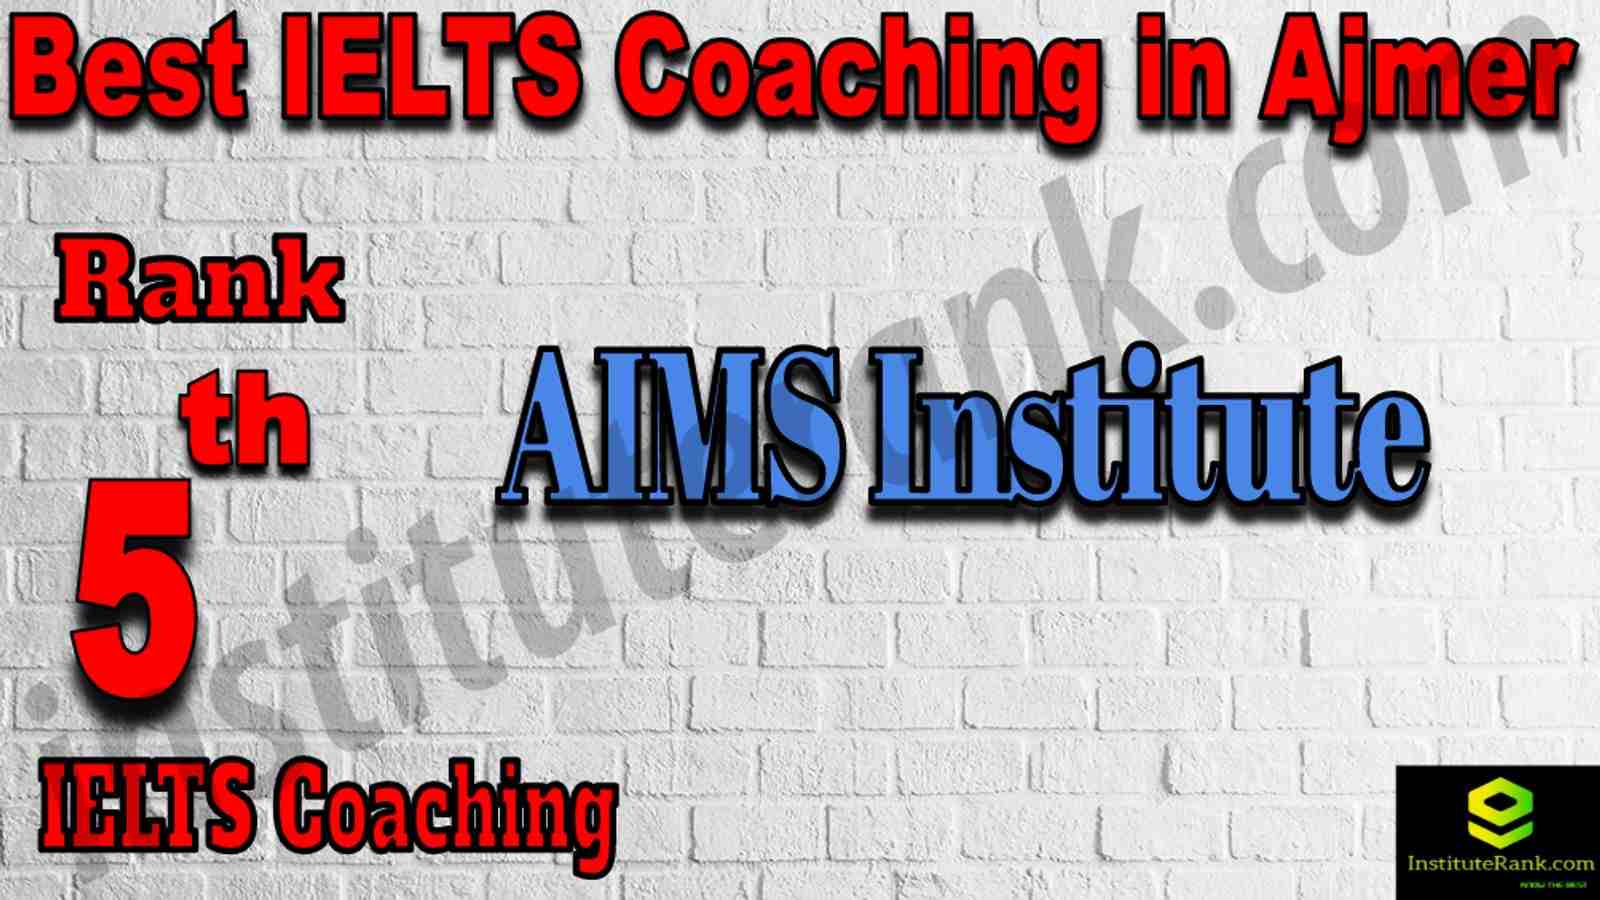 5th Best IELTS Coaching in Ajmer